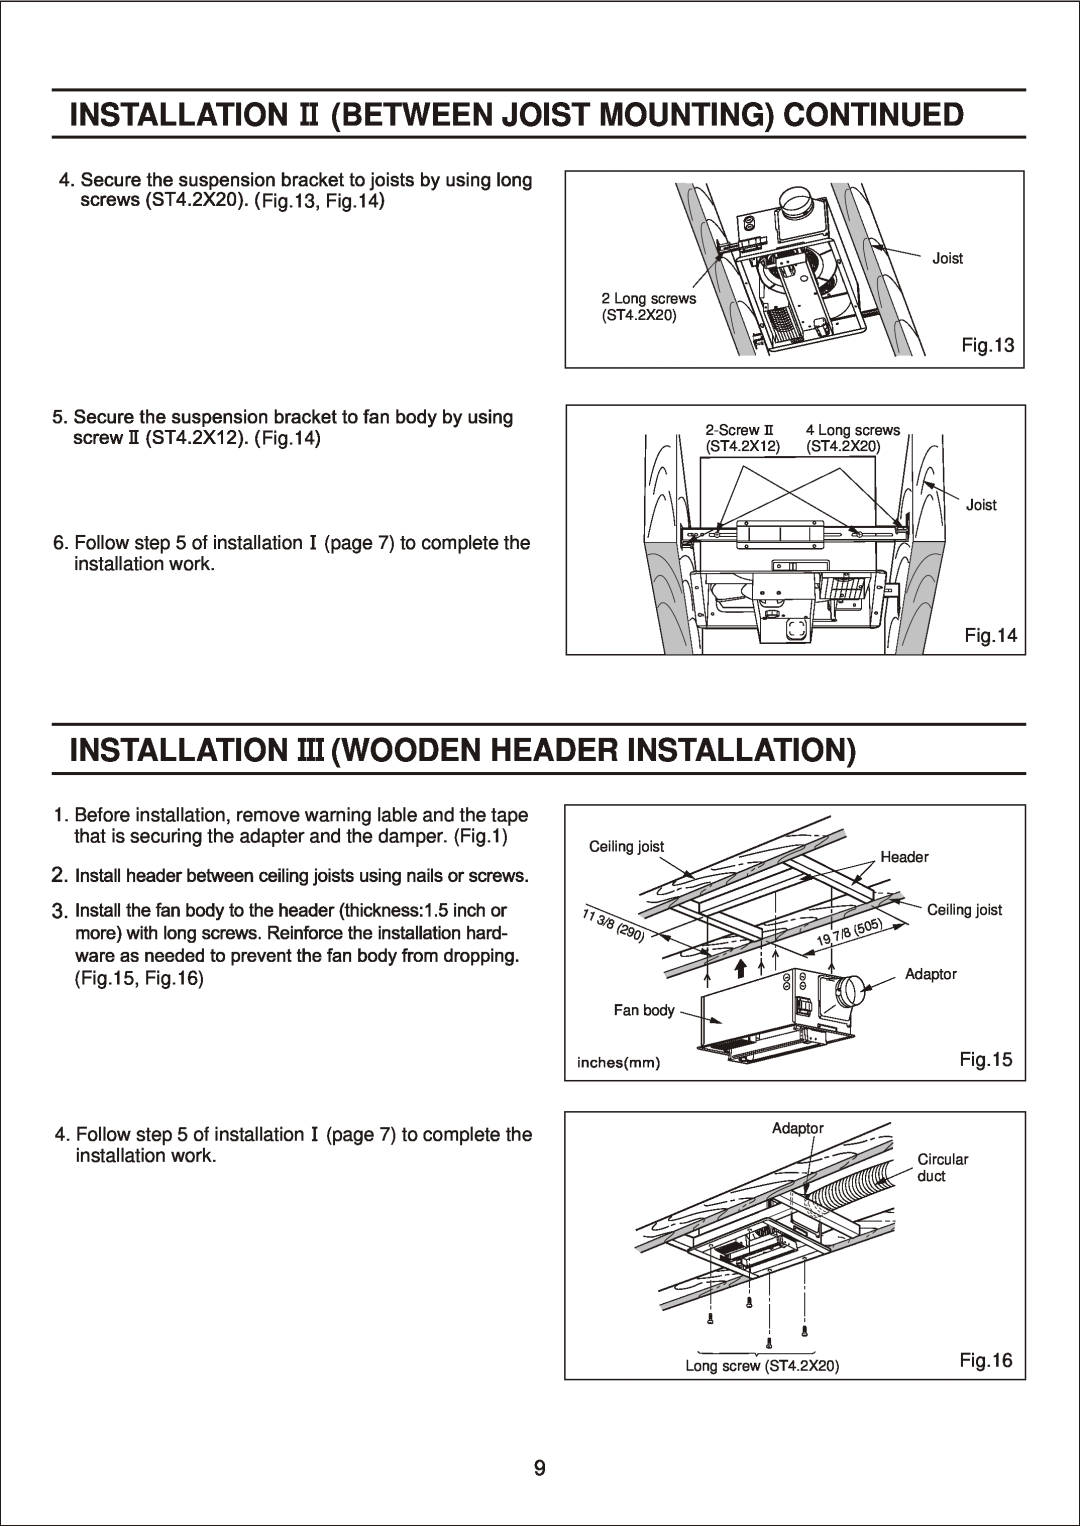 Panasonic FV-11VHL2, FV-11VH2 manual Installation Between Joist Mounting Continued, Installation Wooden Header Installation 